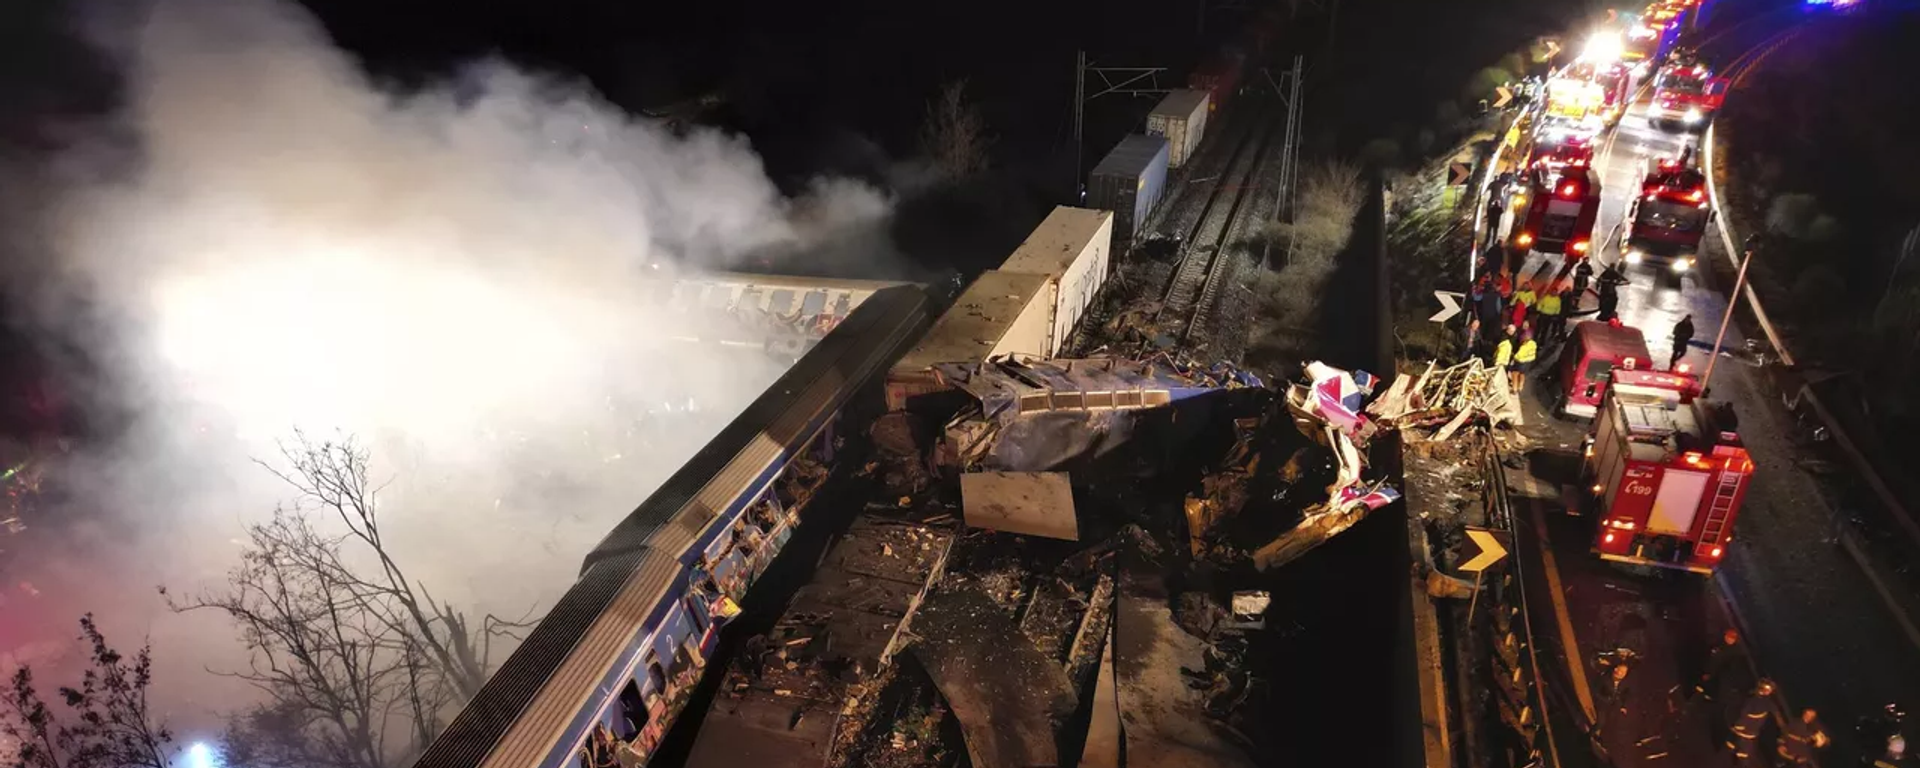 Yunanistan'ın Larissa kentinde iki tren çarpıştı. Söz konusu kazada ilk belirlemelere göre 16 kişi hayatını kaybetti, 85 kişi de yaralandı. - Sputnik Türkiye, 1920, 09.03.2023